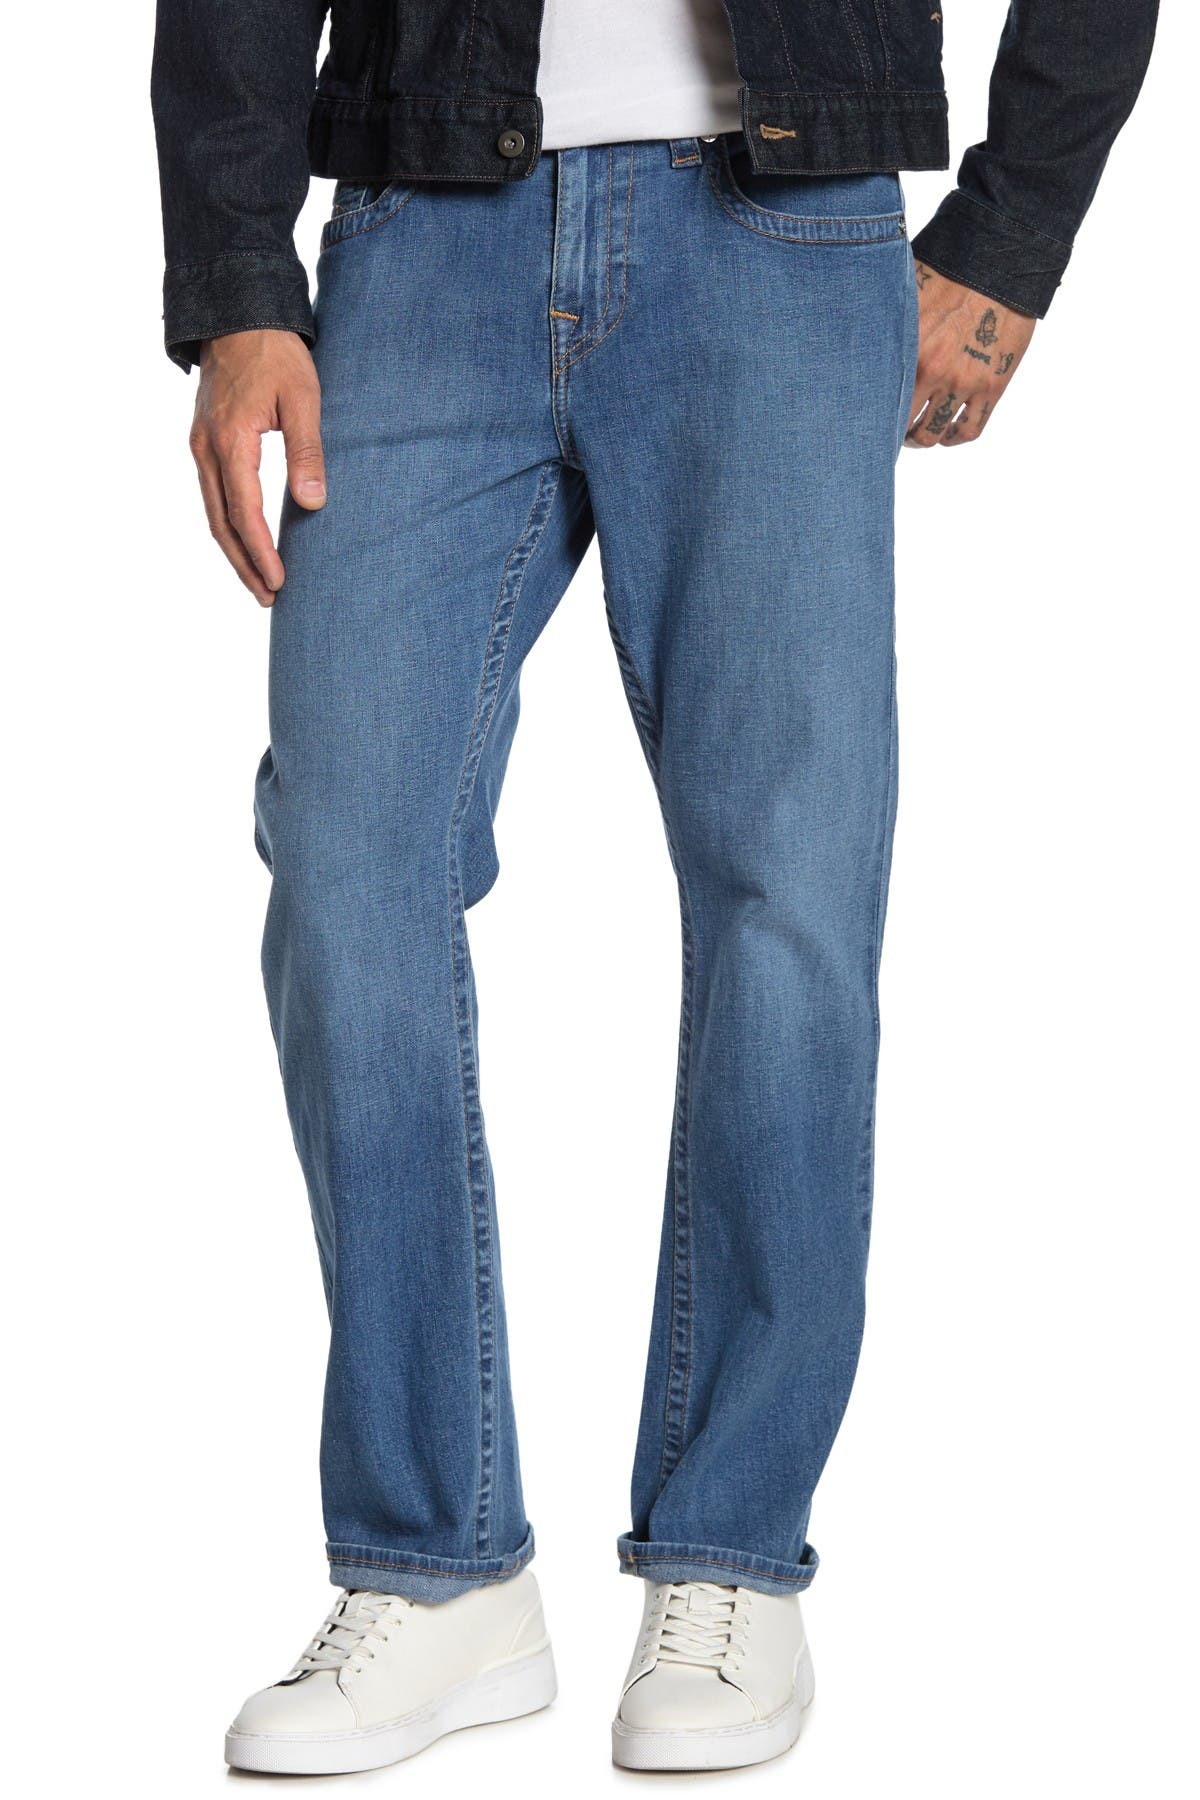 big & tall true religion jeans